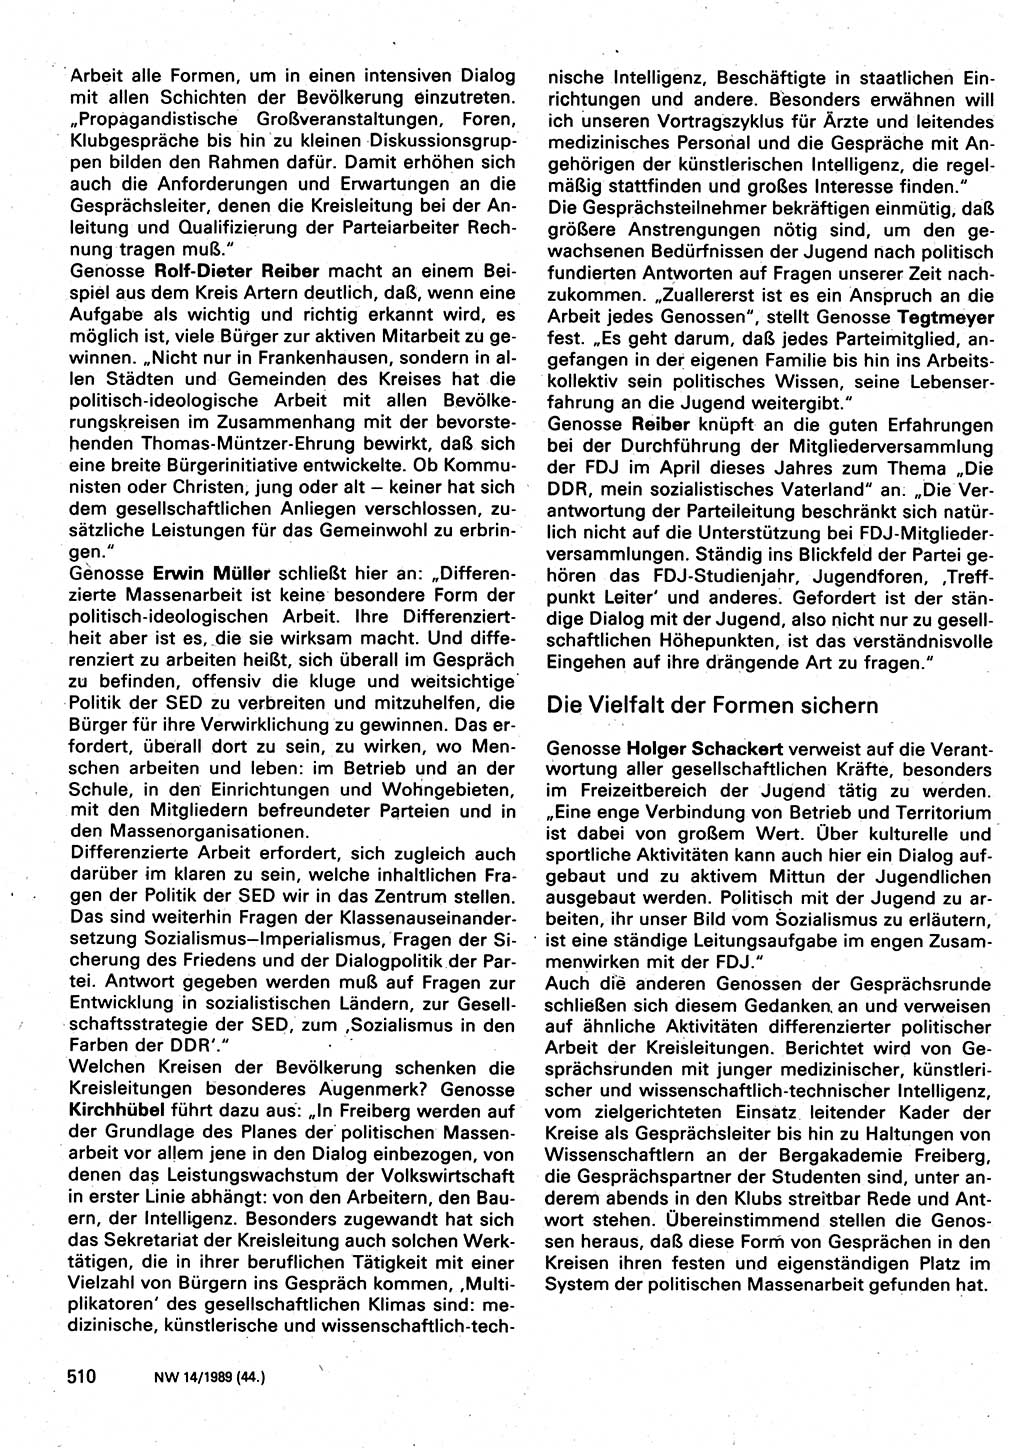 Neuer Weg (NW), Organ des Zentralkomitees (ZK) der SED (Sozialistische Einheitspartei Deutschlands) für Fragen des Parteilebens, 44. Jahrgang [Deutsche Demokratische Republik (DDR)] 1989, Seite 510 (NW ZK SED DDR 1989, S. 510)